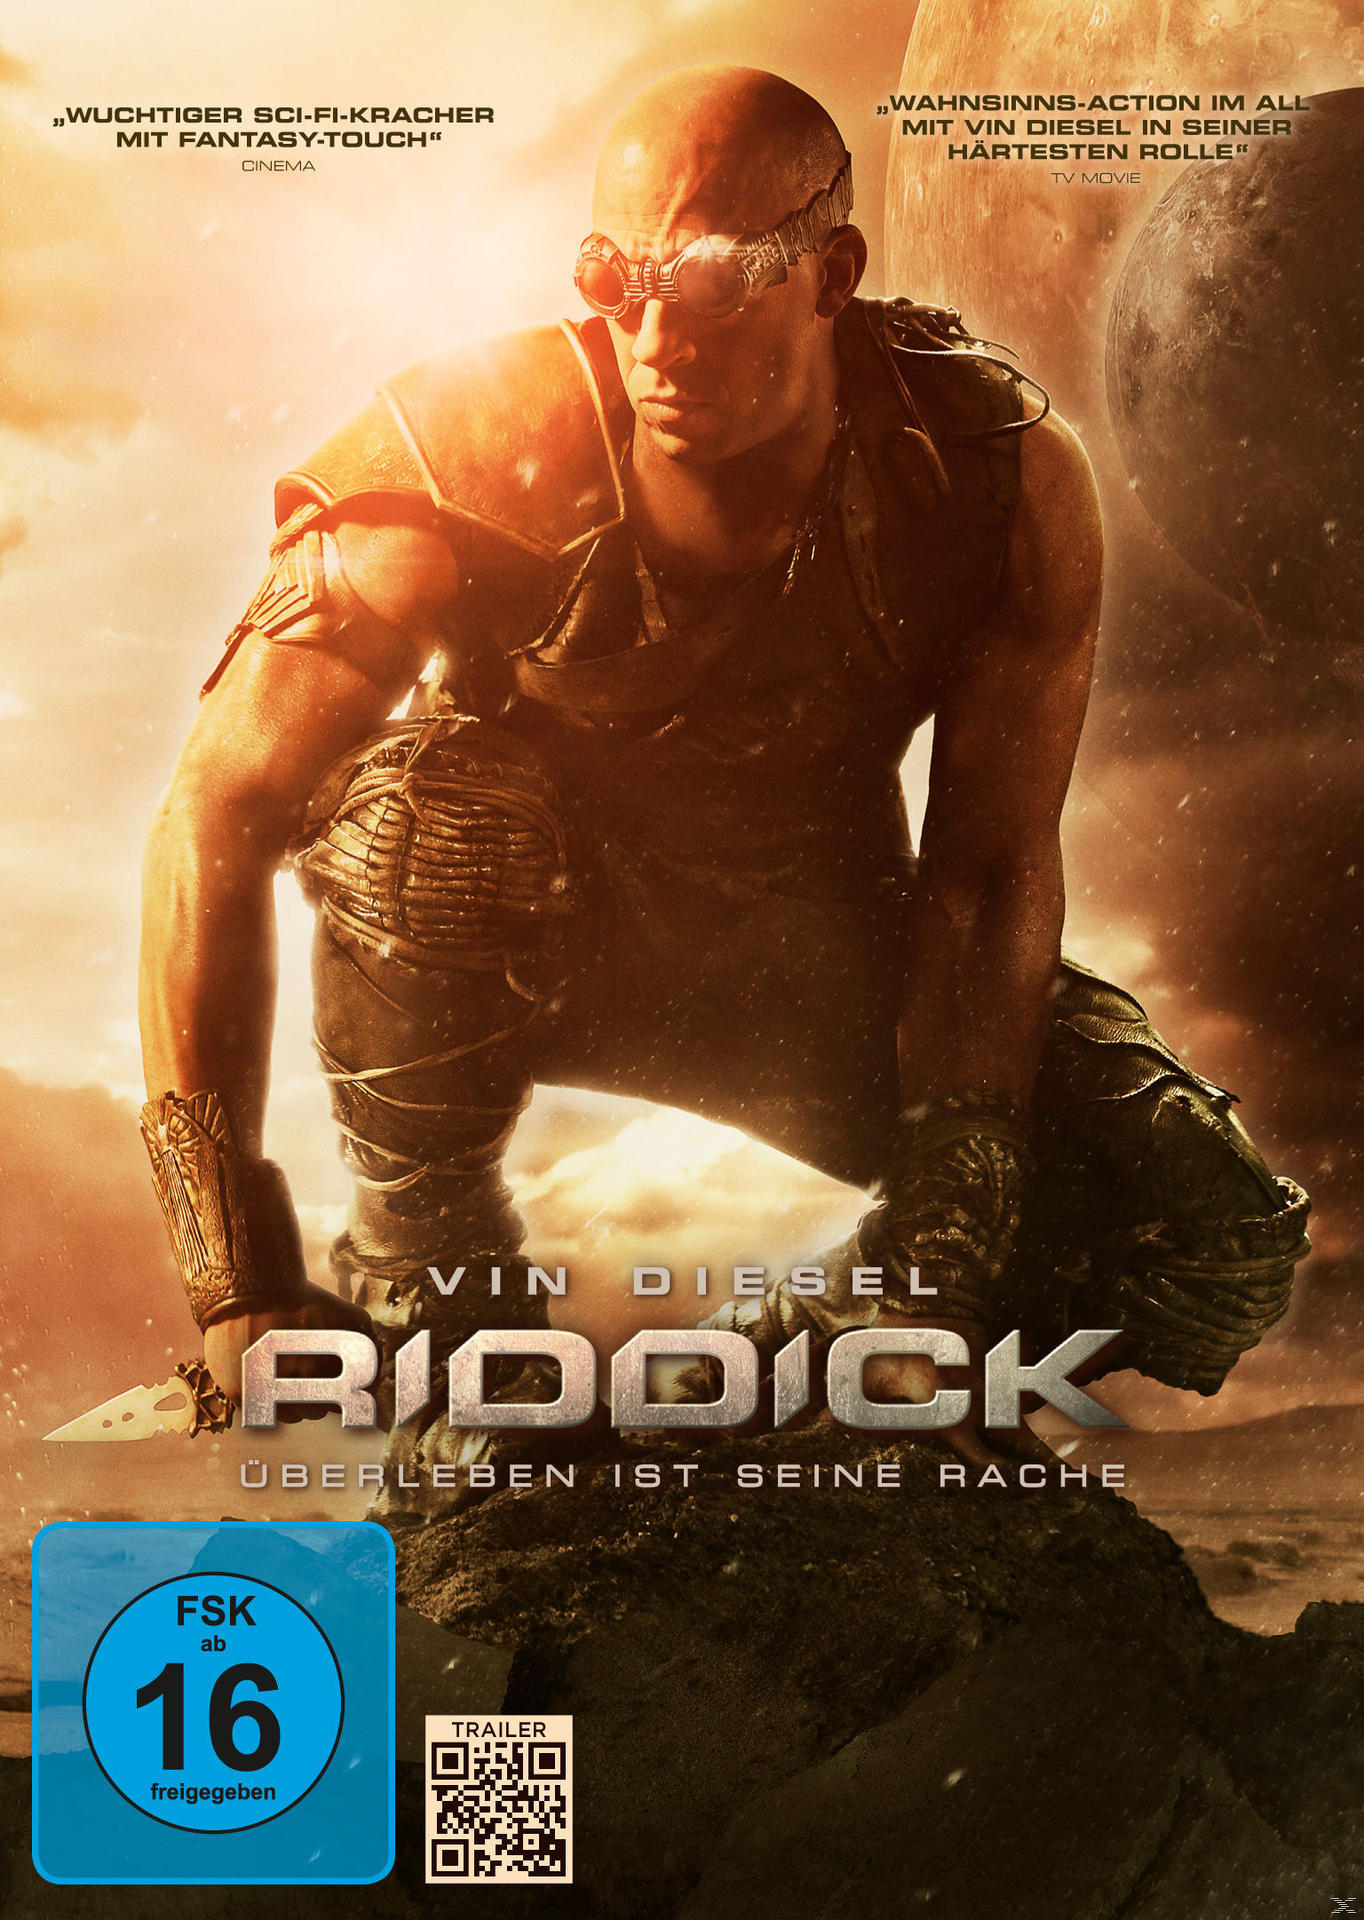 Riddick Rache - DVD seine Überleben ist